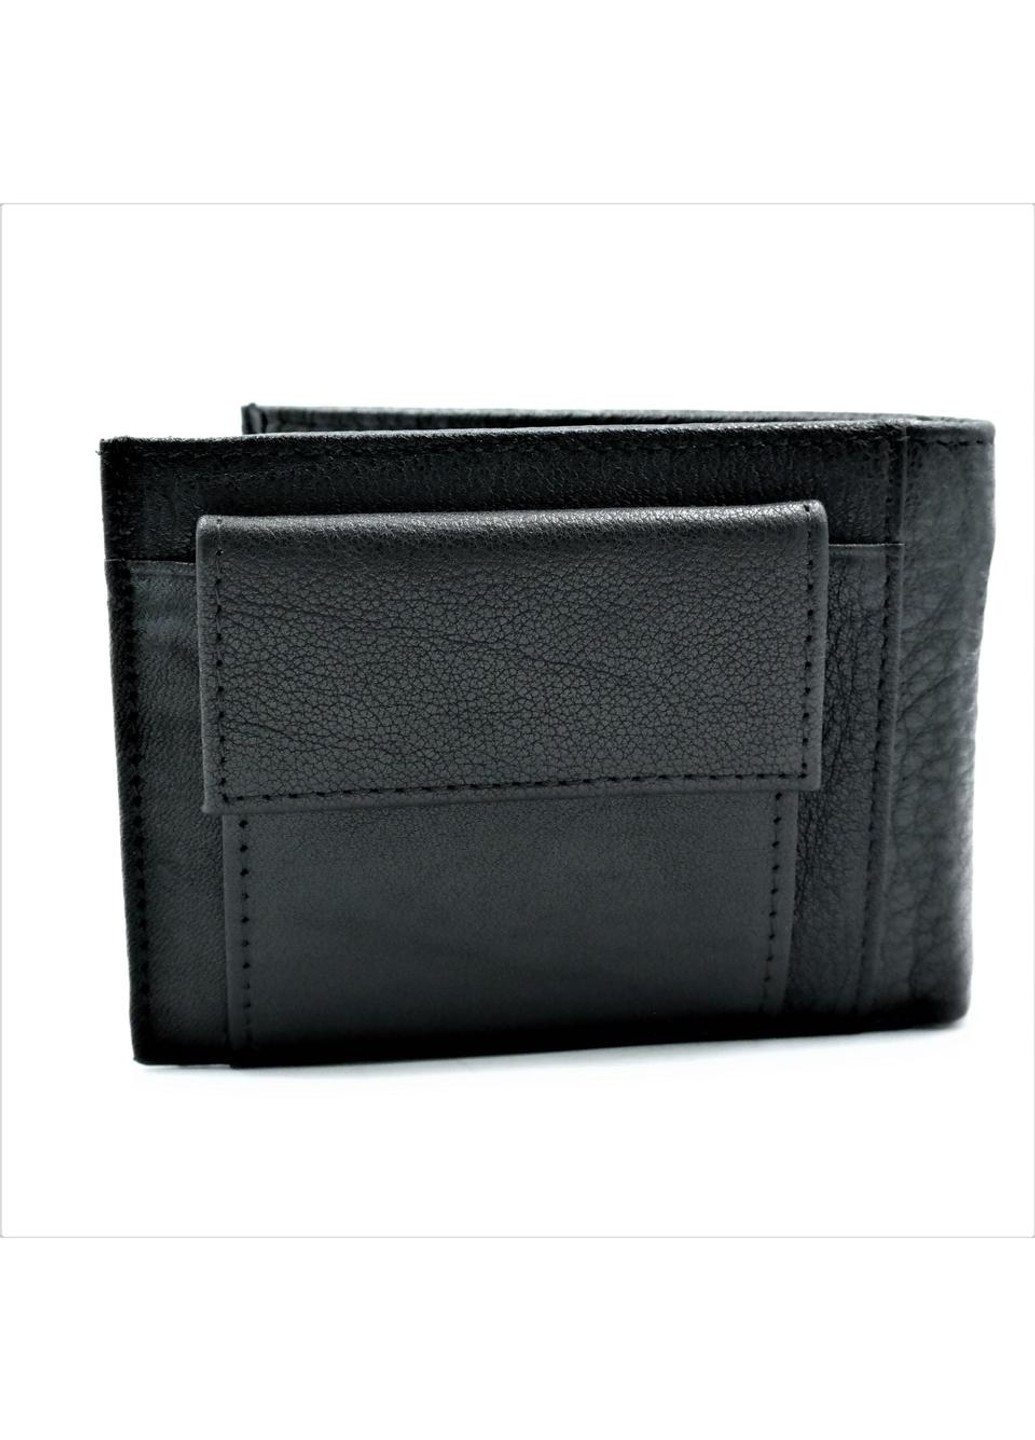 Мужской кожаный кошелек-зажим 11 х 8 х 3 см Черный wtro-168-24B Weatro (272950022)